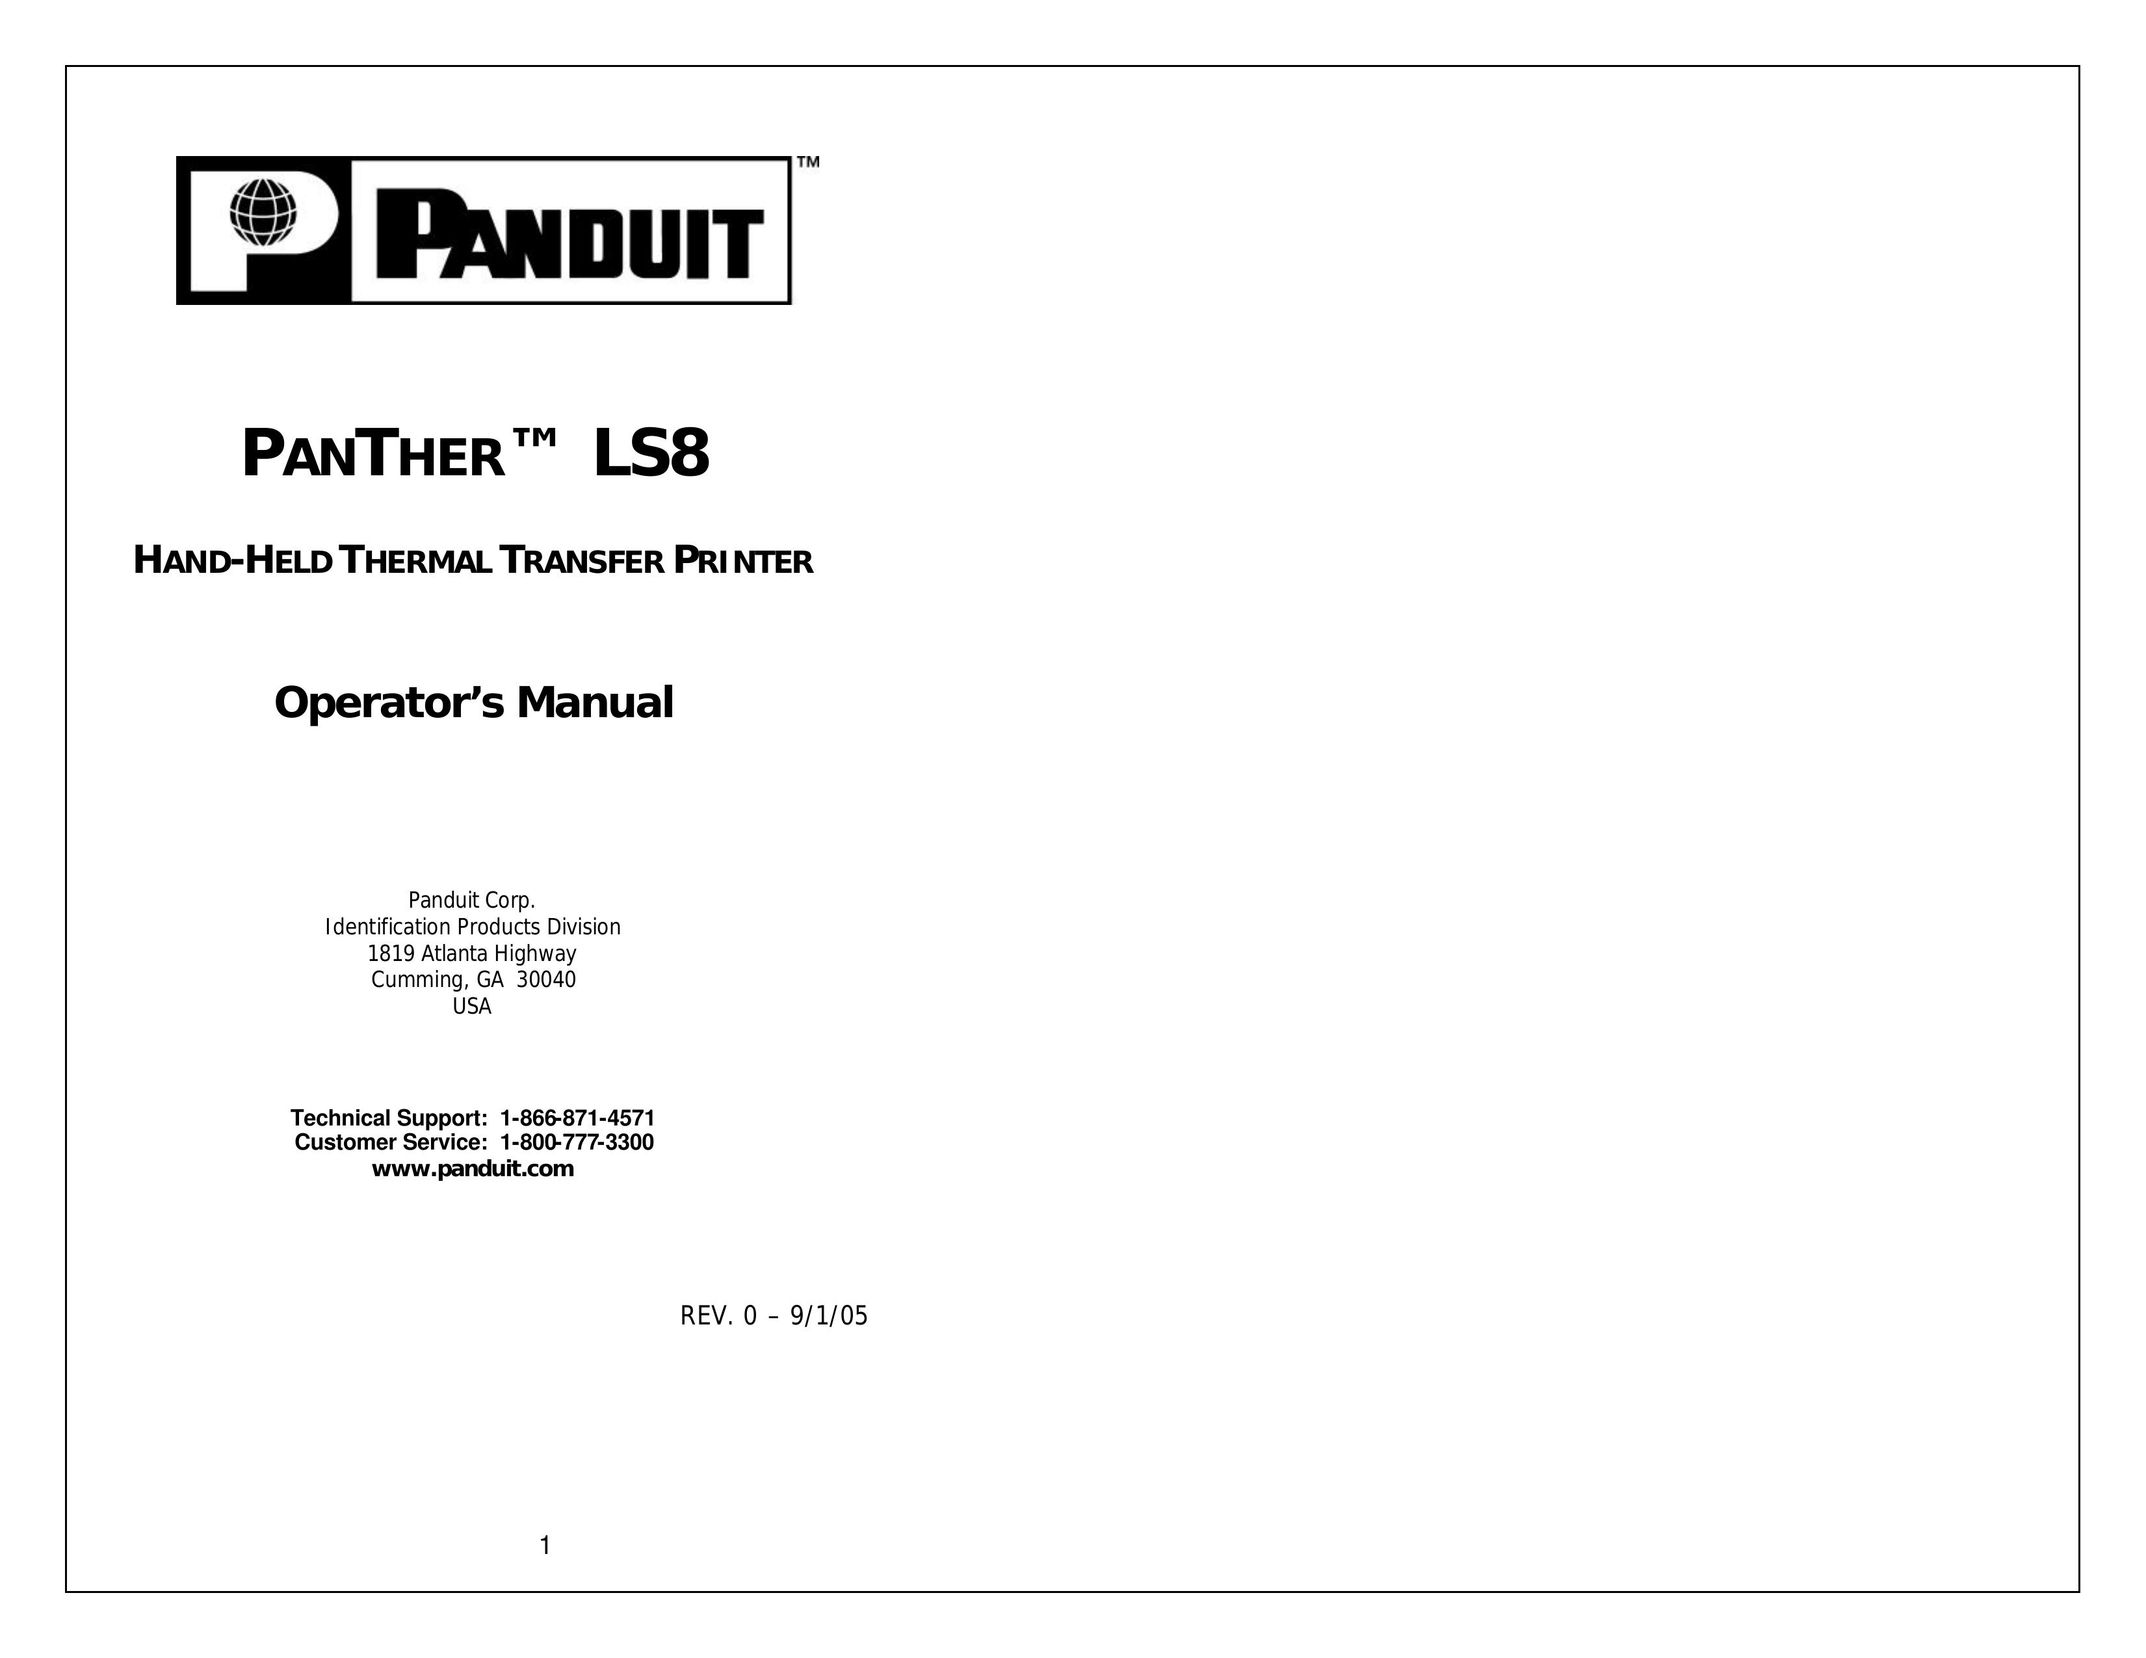 Panduit LS8 Printer User Manual